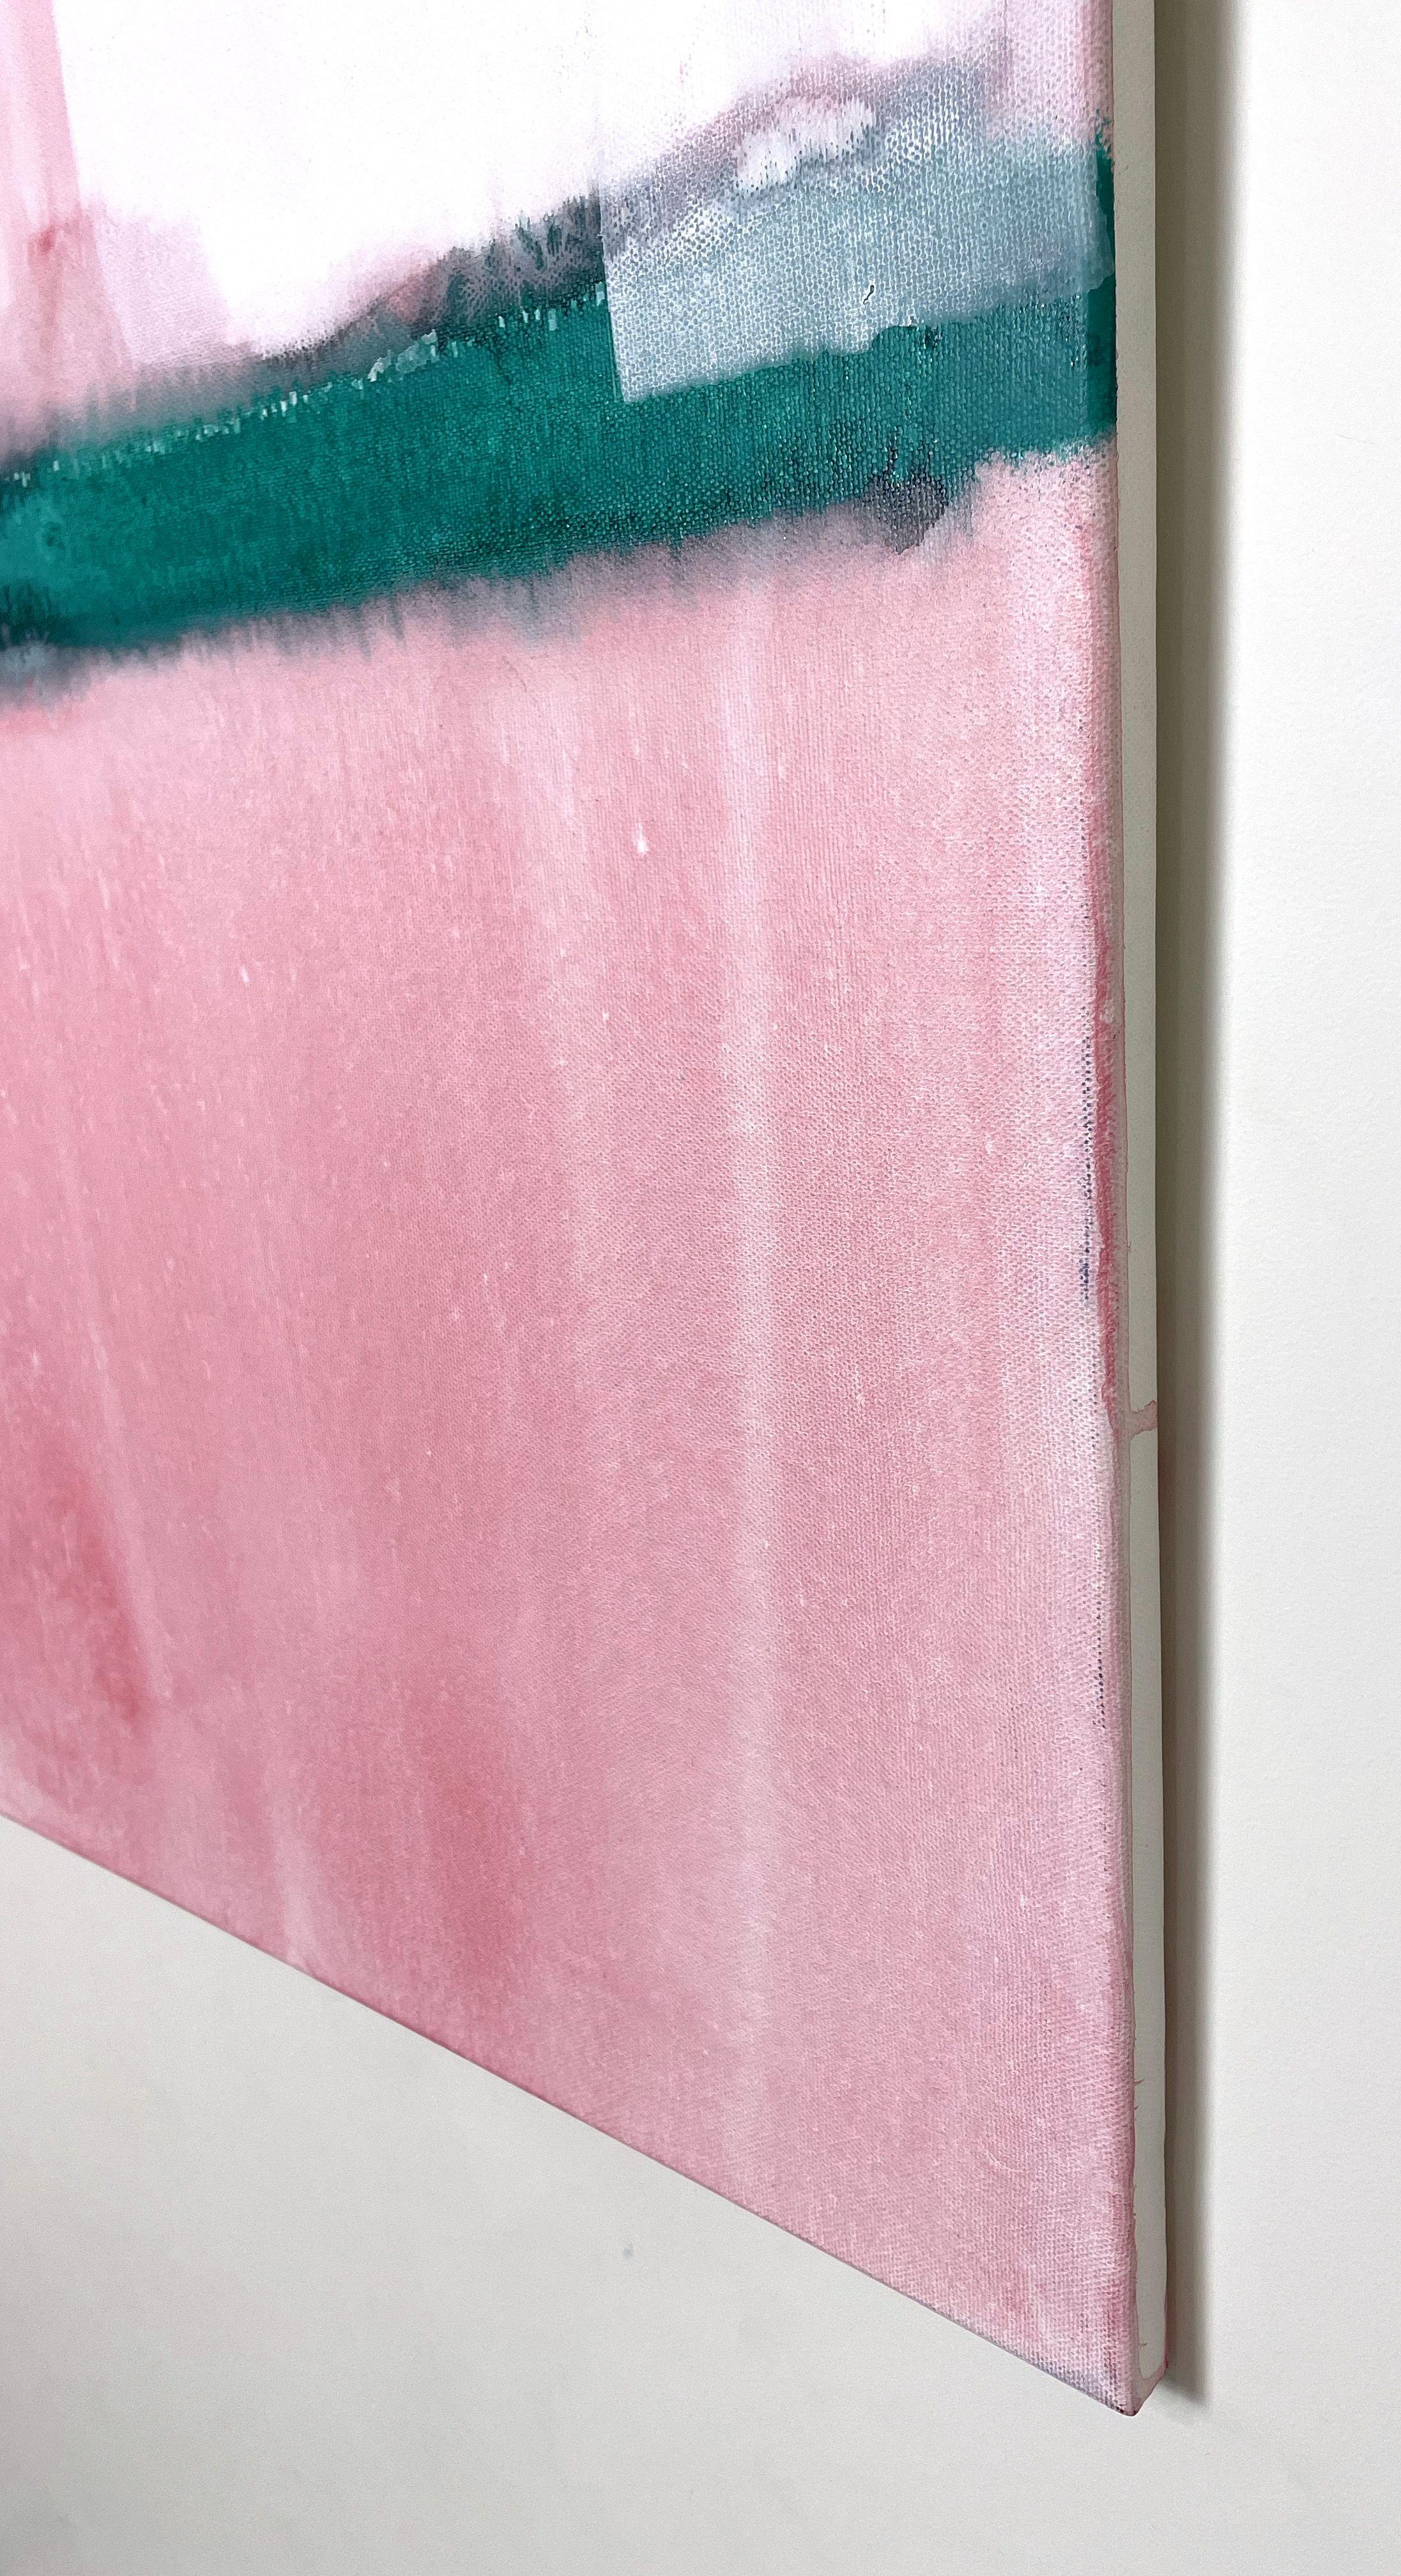 Originales minimalistisches abstraktes Gemälde. Smaragdgrüne Linie mit weißen Markierungen auf rosa Hintergrund sprühen.  Improvisation, Unbewusstes und Serendipität.    ABMESSUNGEN : 70 X 90 cm    DETAILS :     - Hochwertige Acryl- und Sprühfarbe